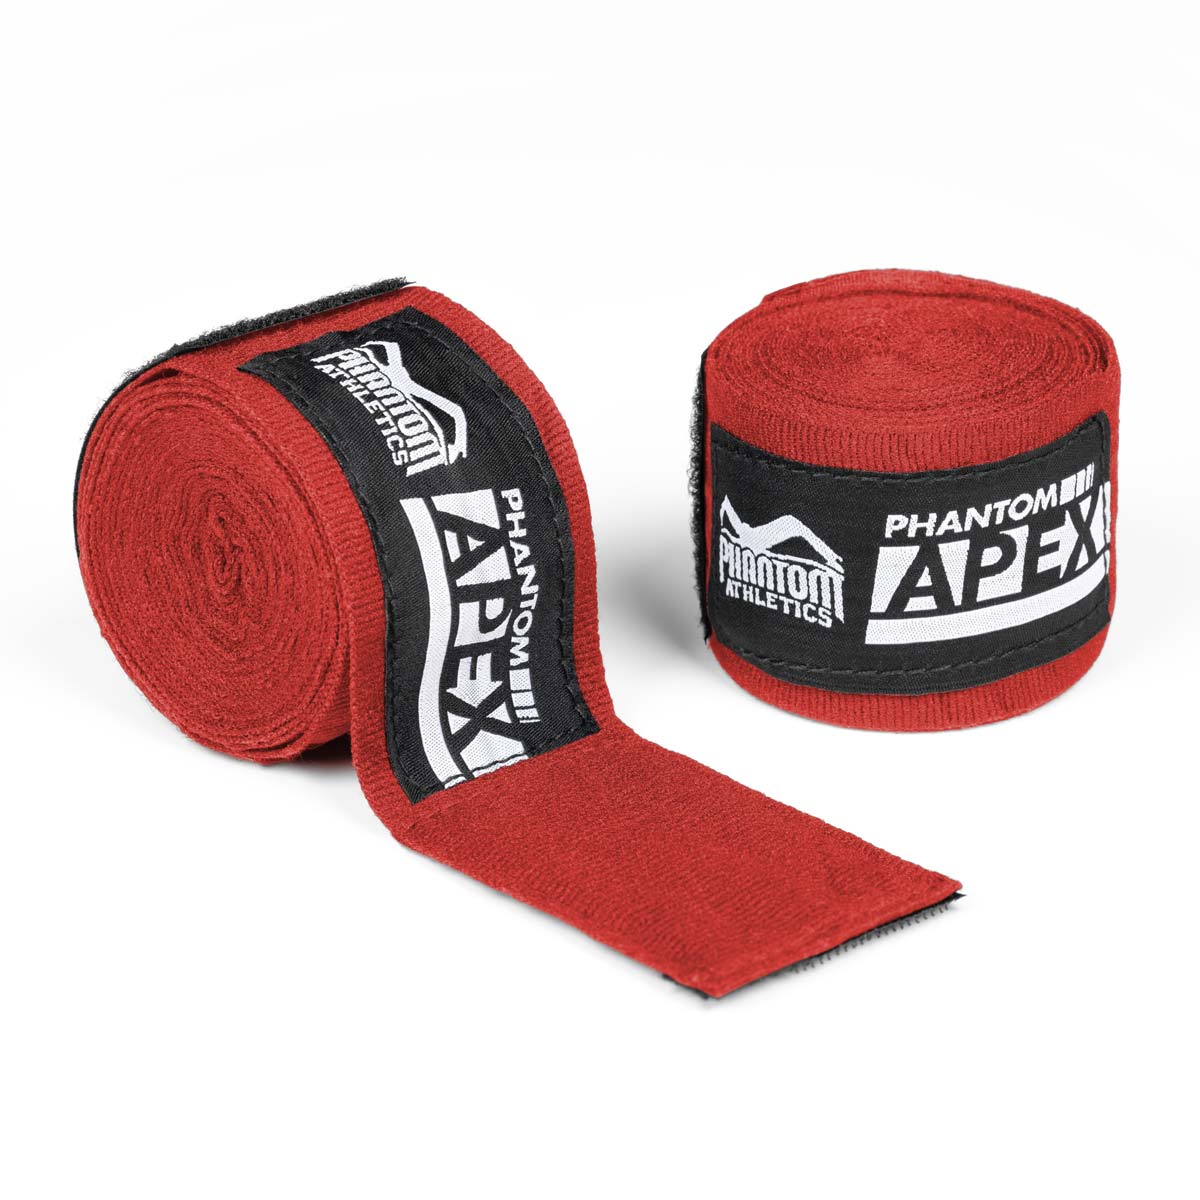 Bandages de boxe Phantom pour l'entraînement et la compétition d'arts martiaux. De couleur rouge et en 2 longueurs différentes. Semi-élastique pour un maximum de soutien et de confort.